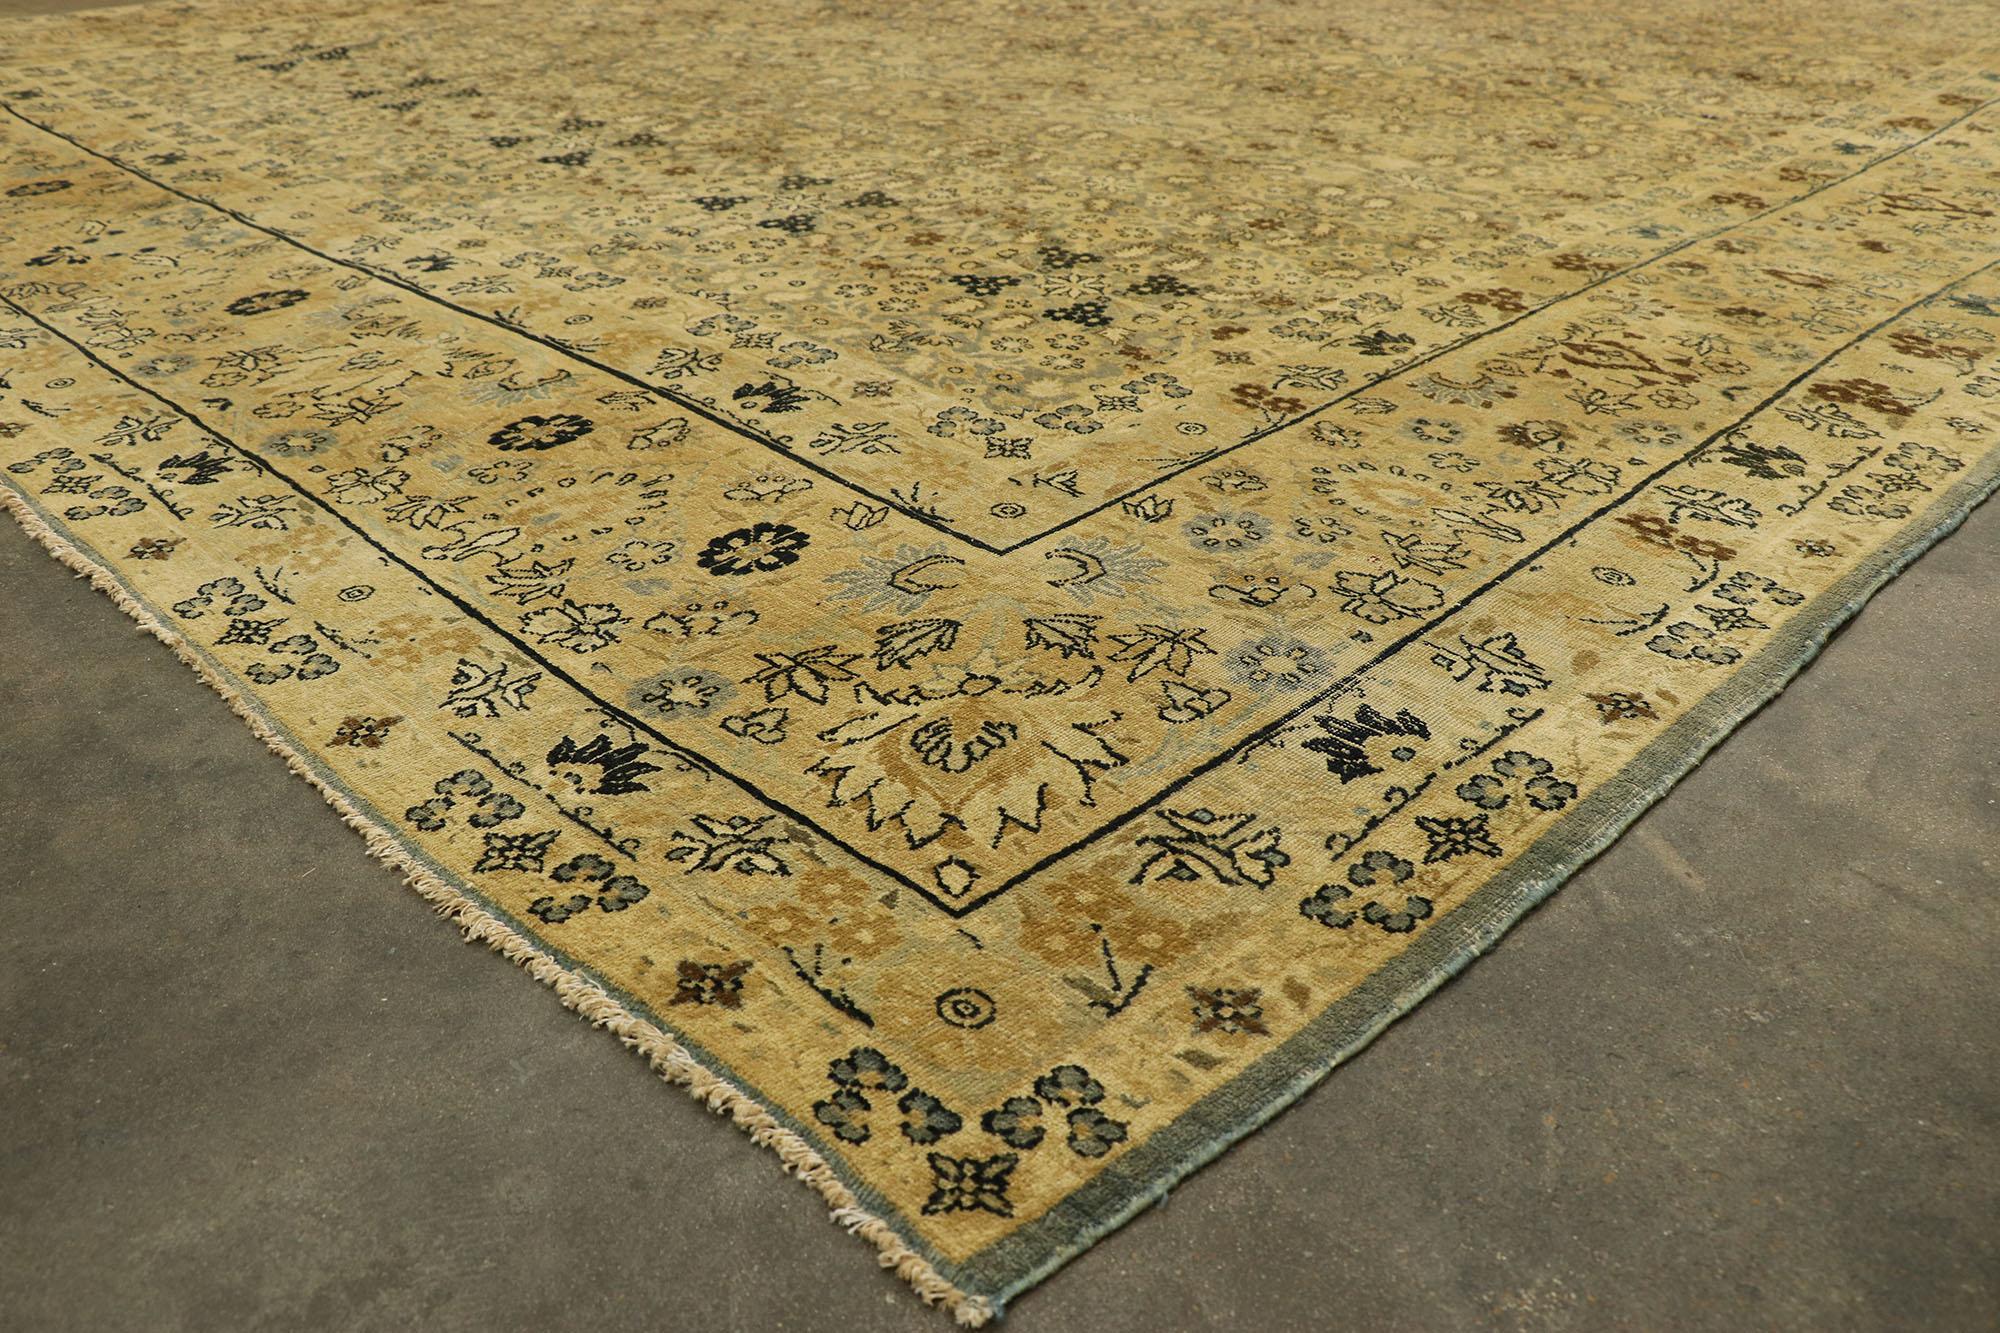 76701 Tapis ancien persan Kerman, 11'02 x 15'02. Les tapis de Kerman proviennent de la ville de Kerman, située dans le centre-sud de l'Iran. Cette ville est considérée comme l'un des principaux centres de tissage d'Iran, avec un riche héritage en